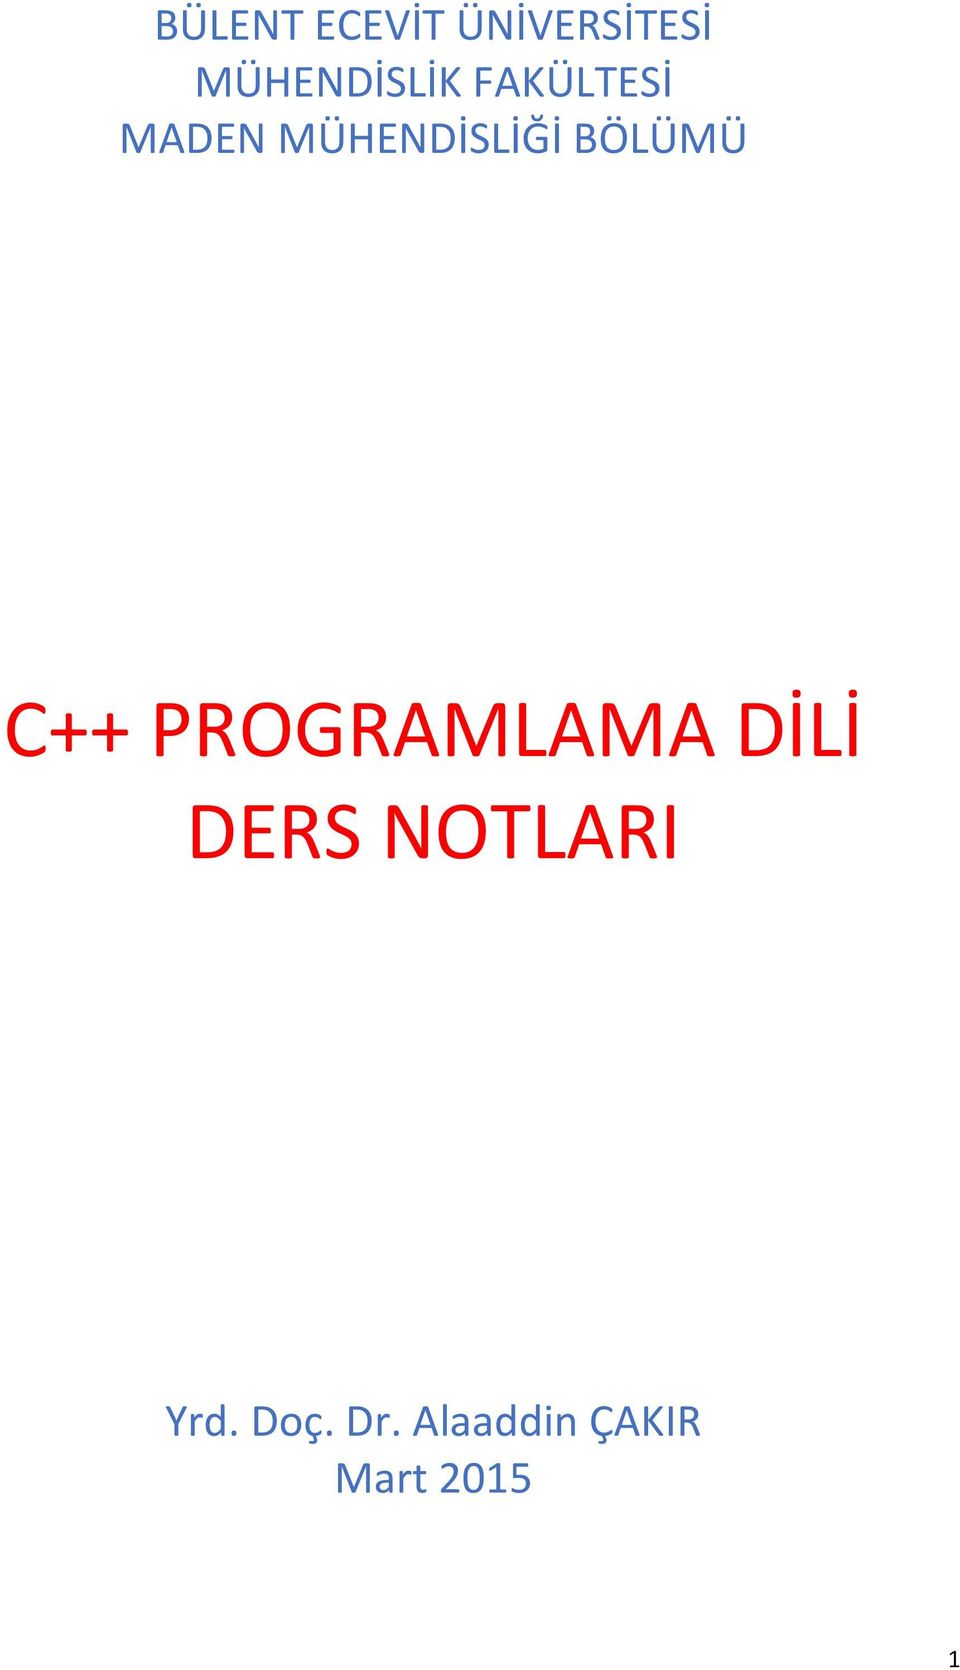 MÜHENDİSLİĞİ BÖLÜMÜ C++ PROGRAMLAMA